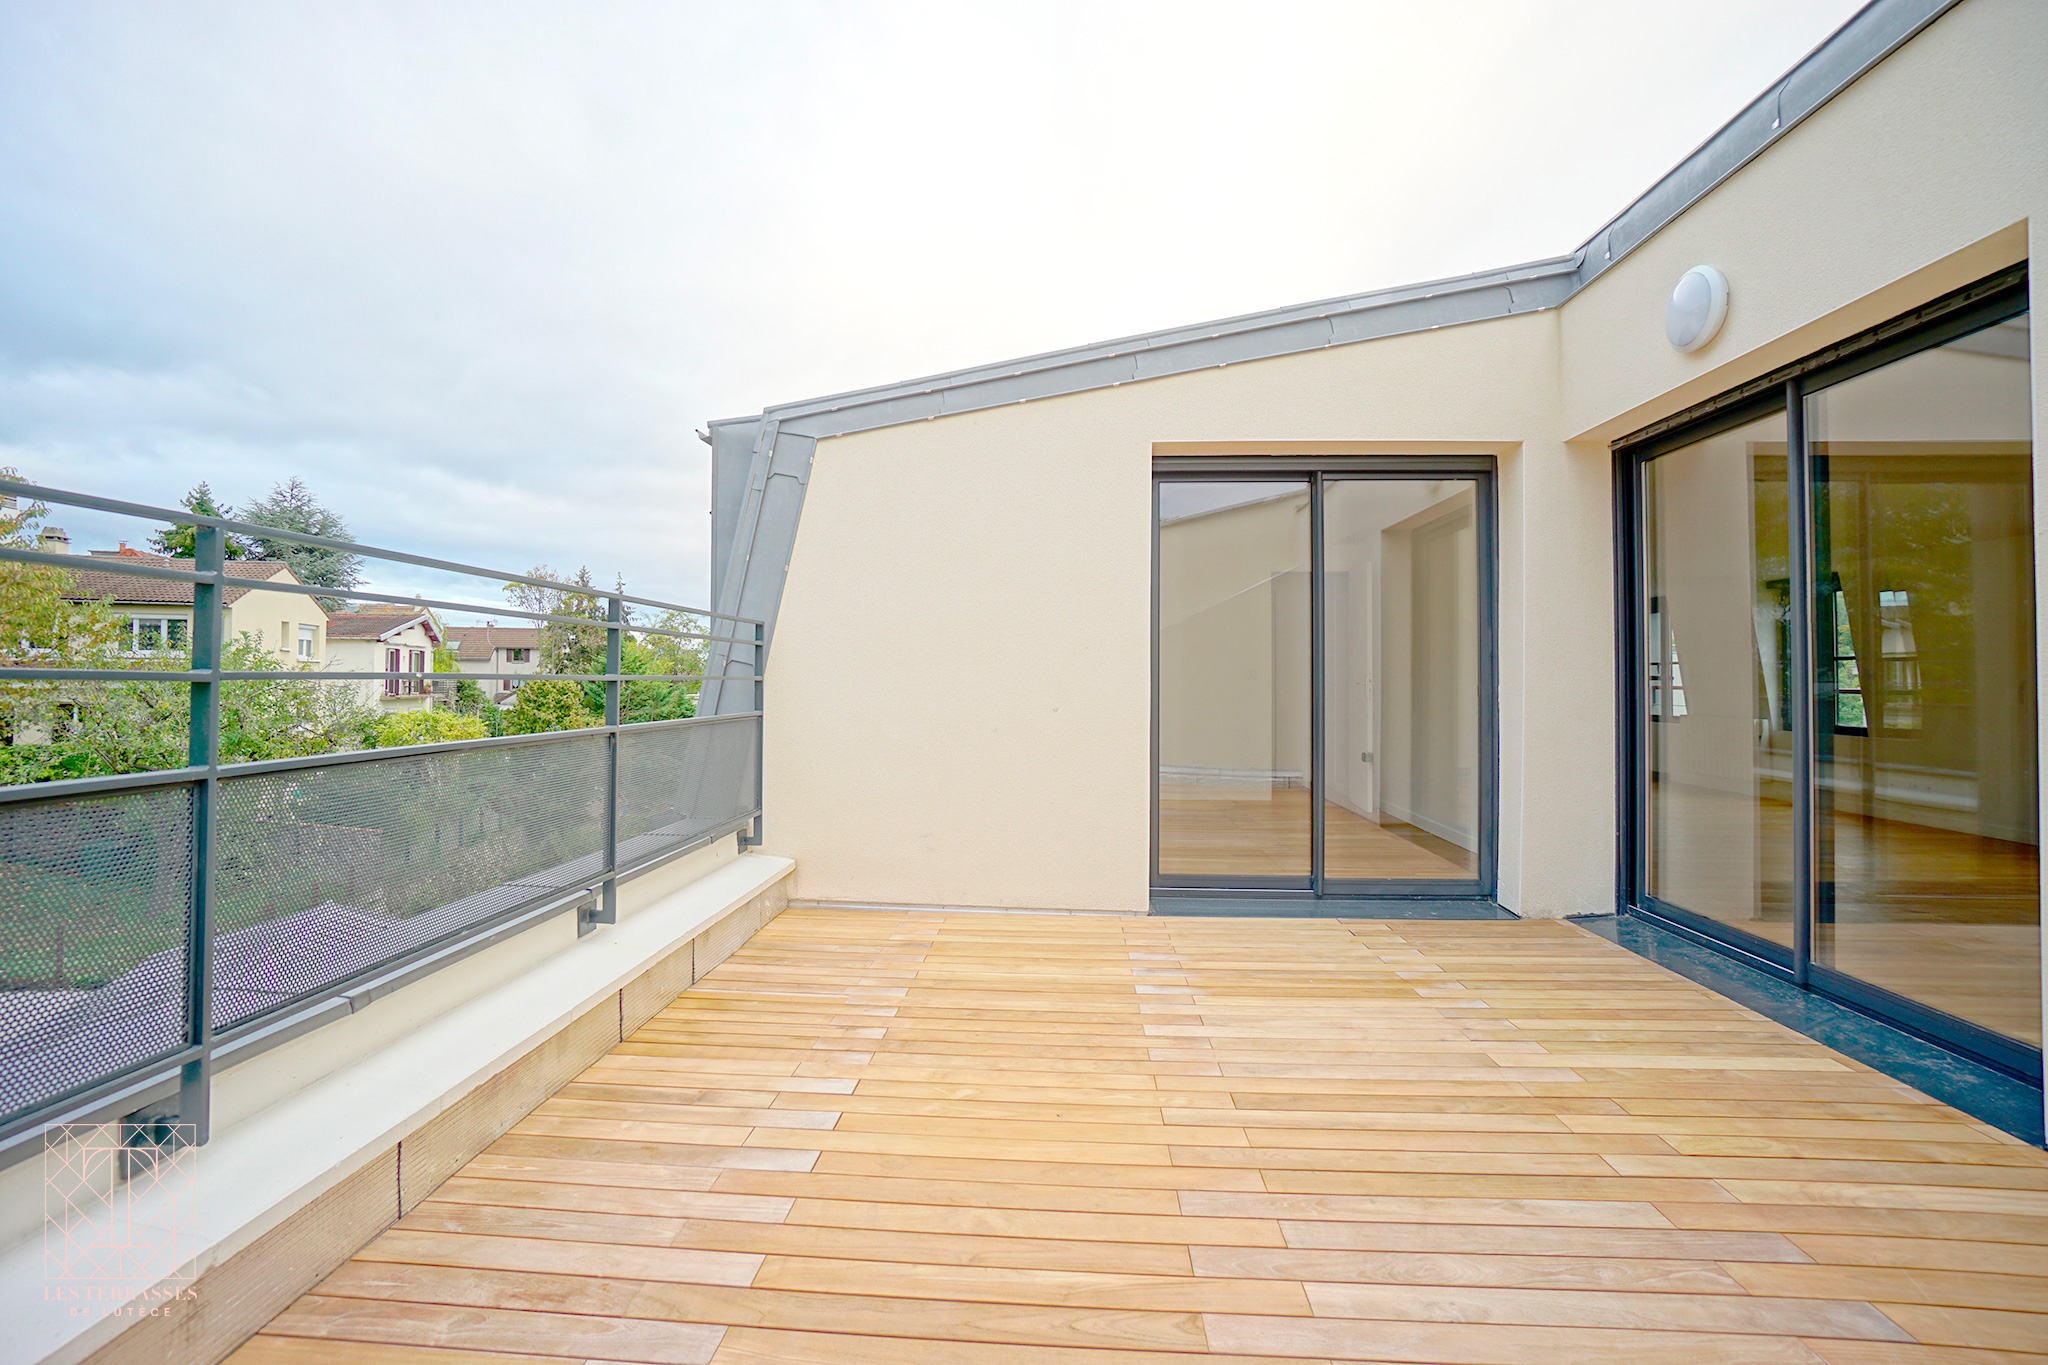 Photo n°2 du bien immobilier Meudon : Appartement 5 pièces duplex en dernier étage avec terrasse